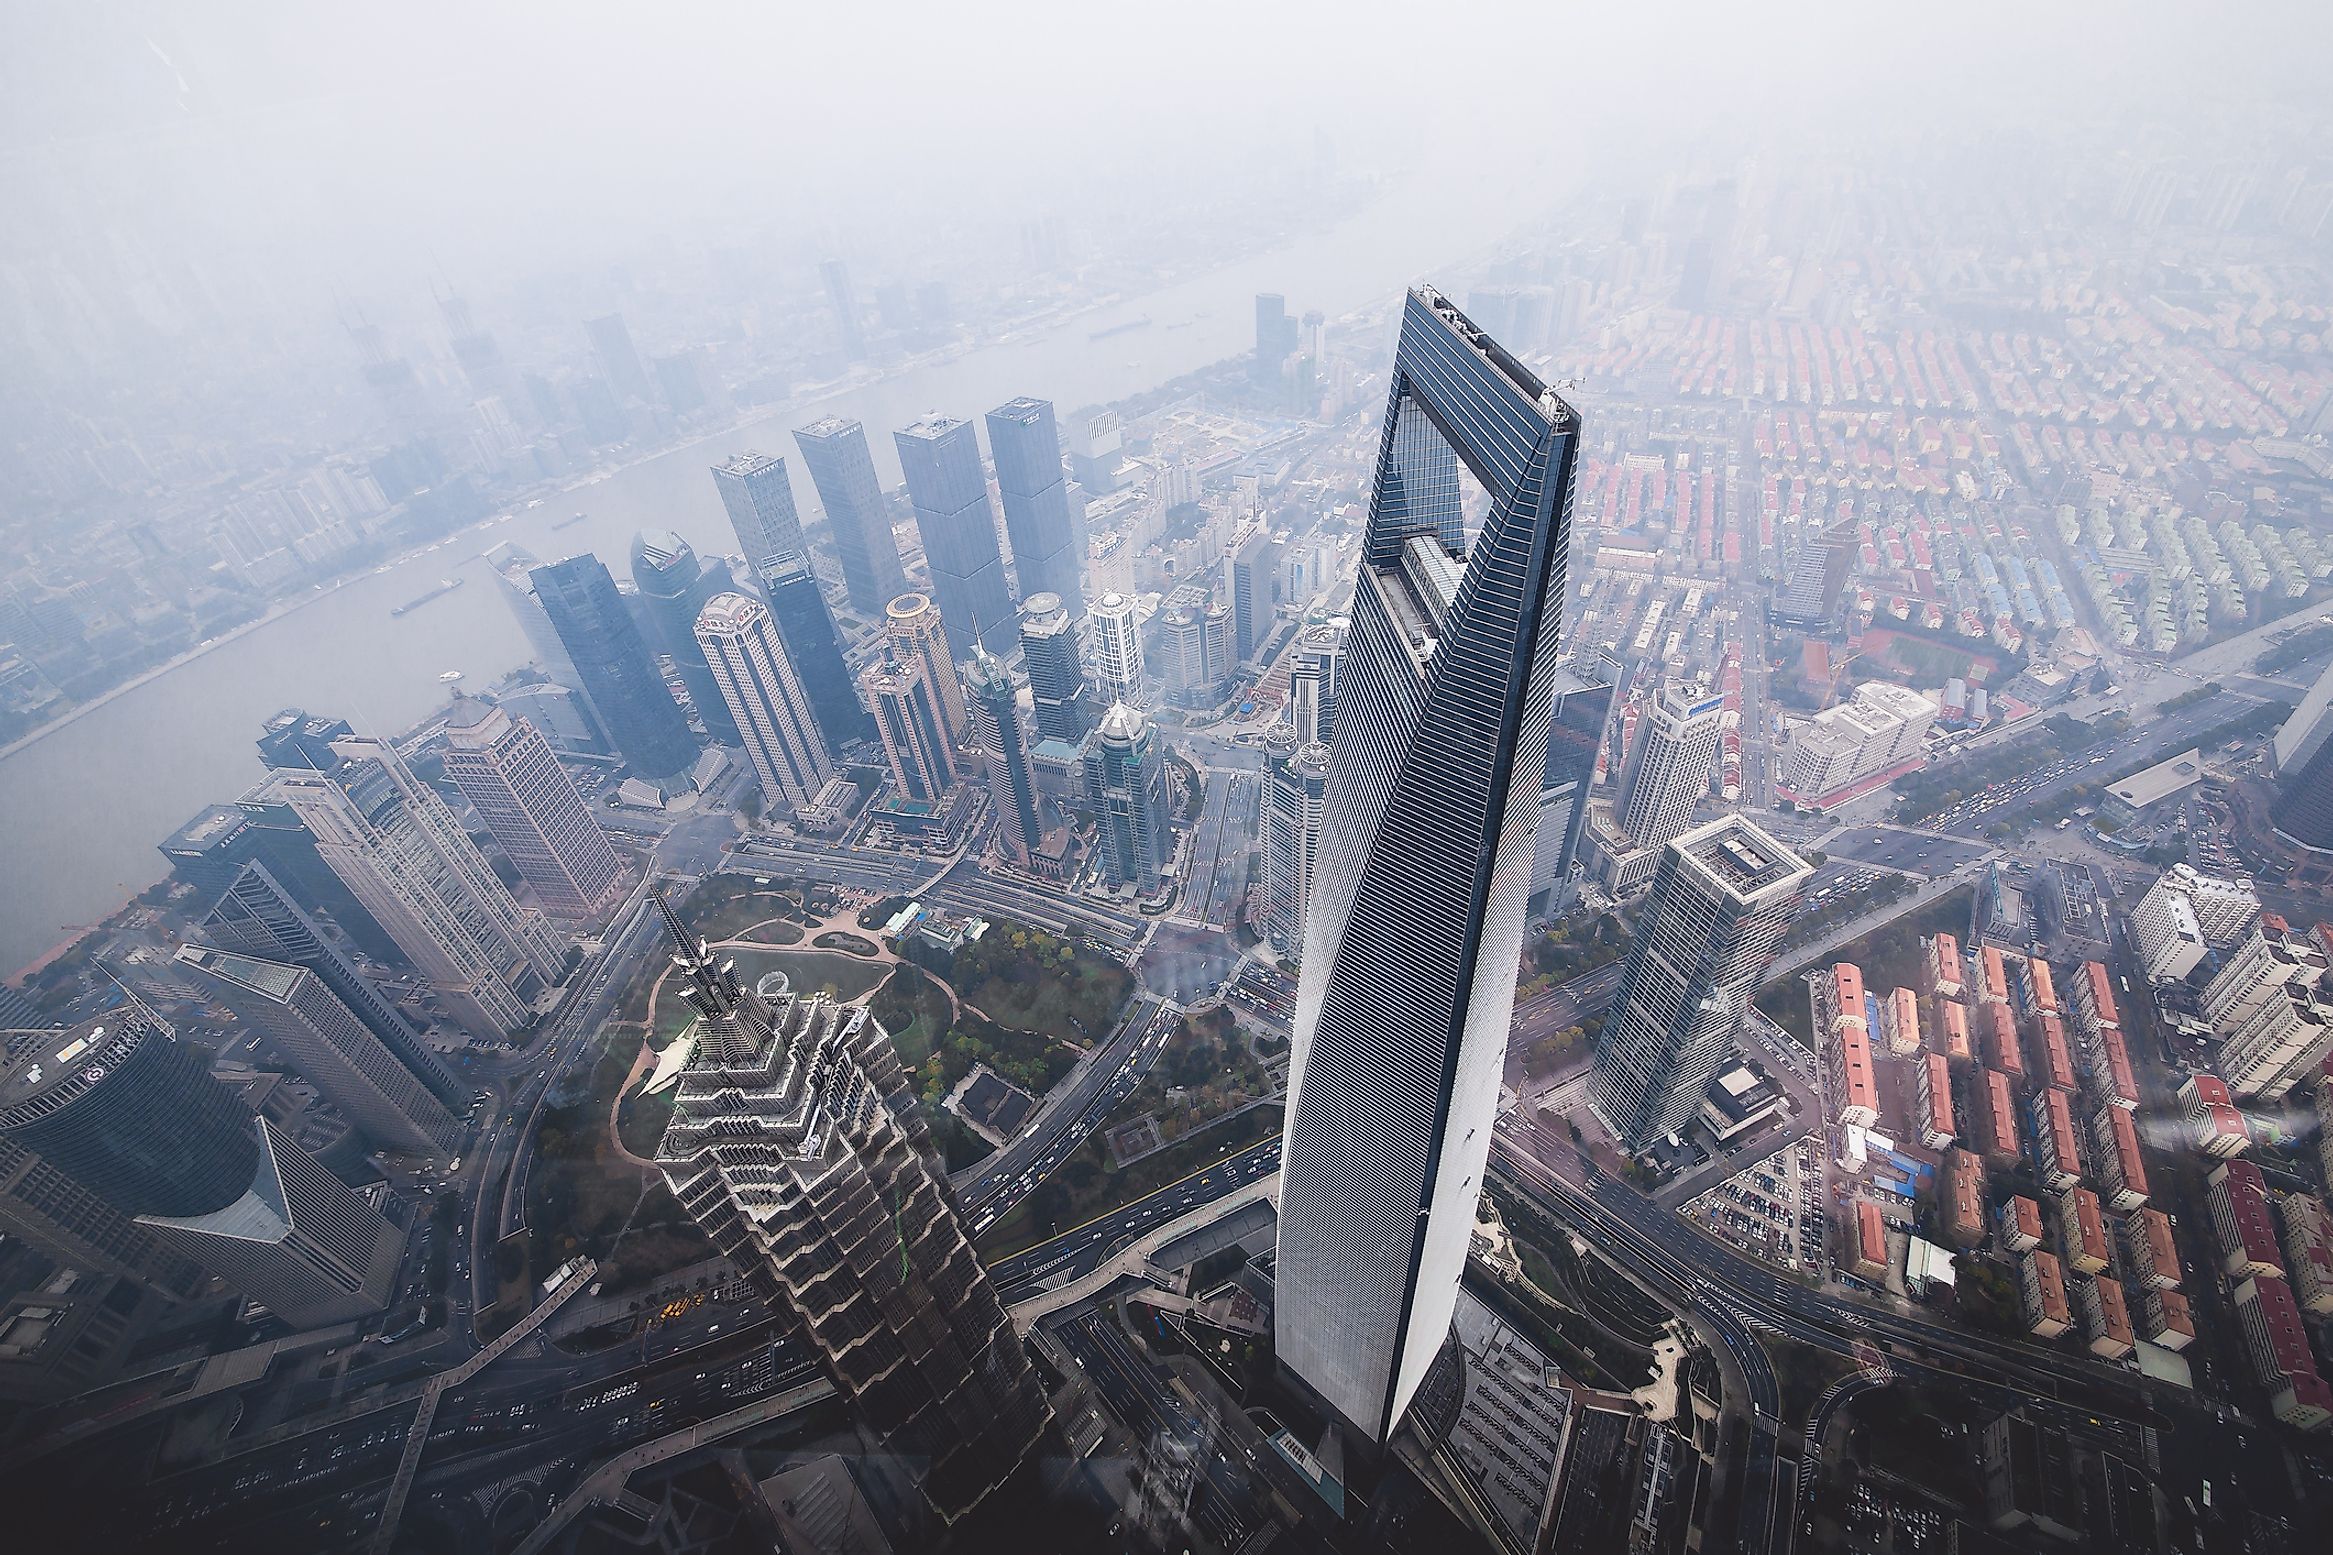 #9 Shanghai World Financial Centre, China - 1614 feet 